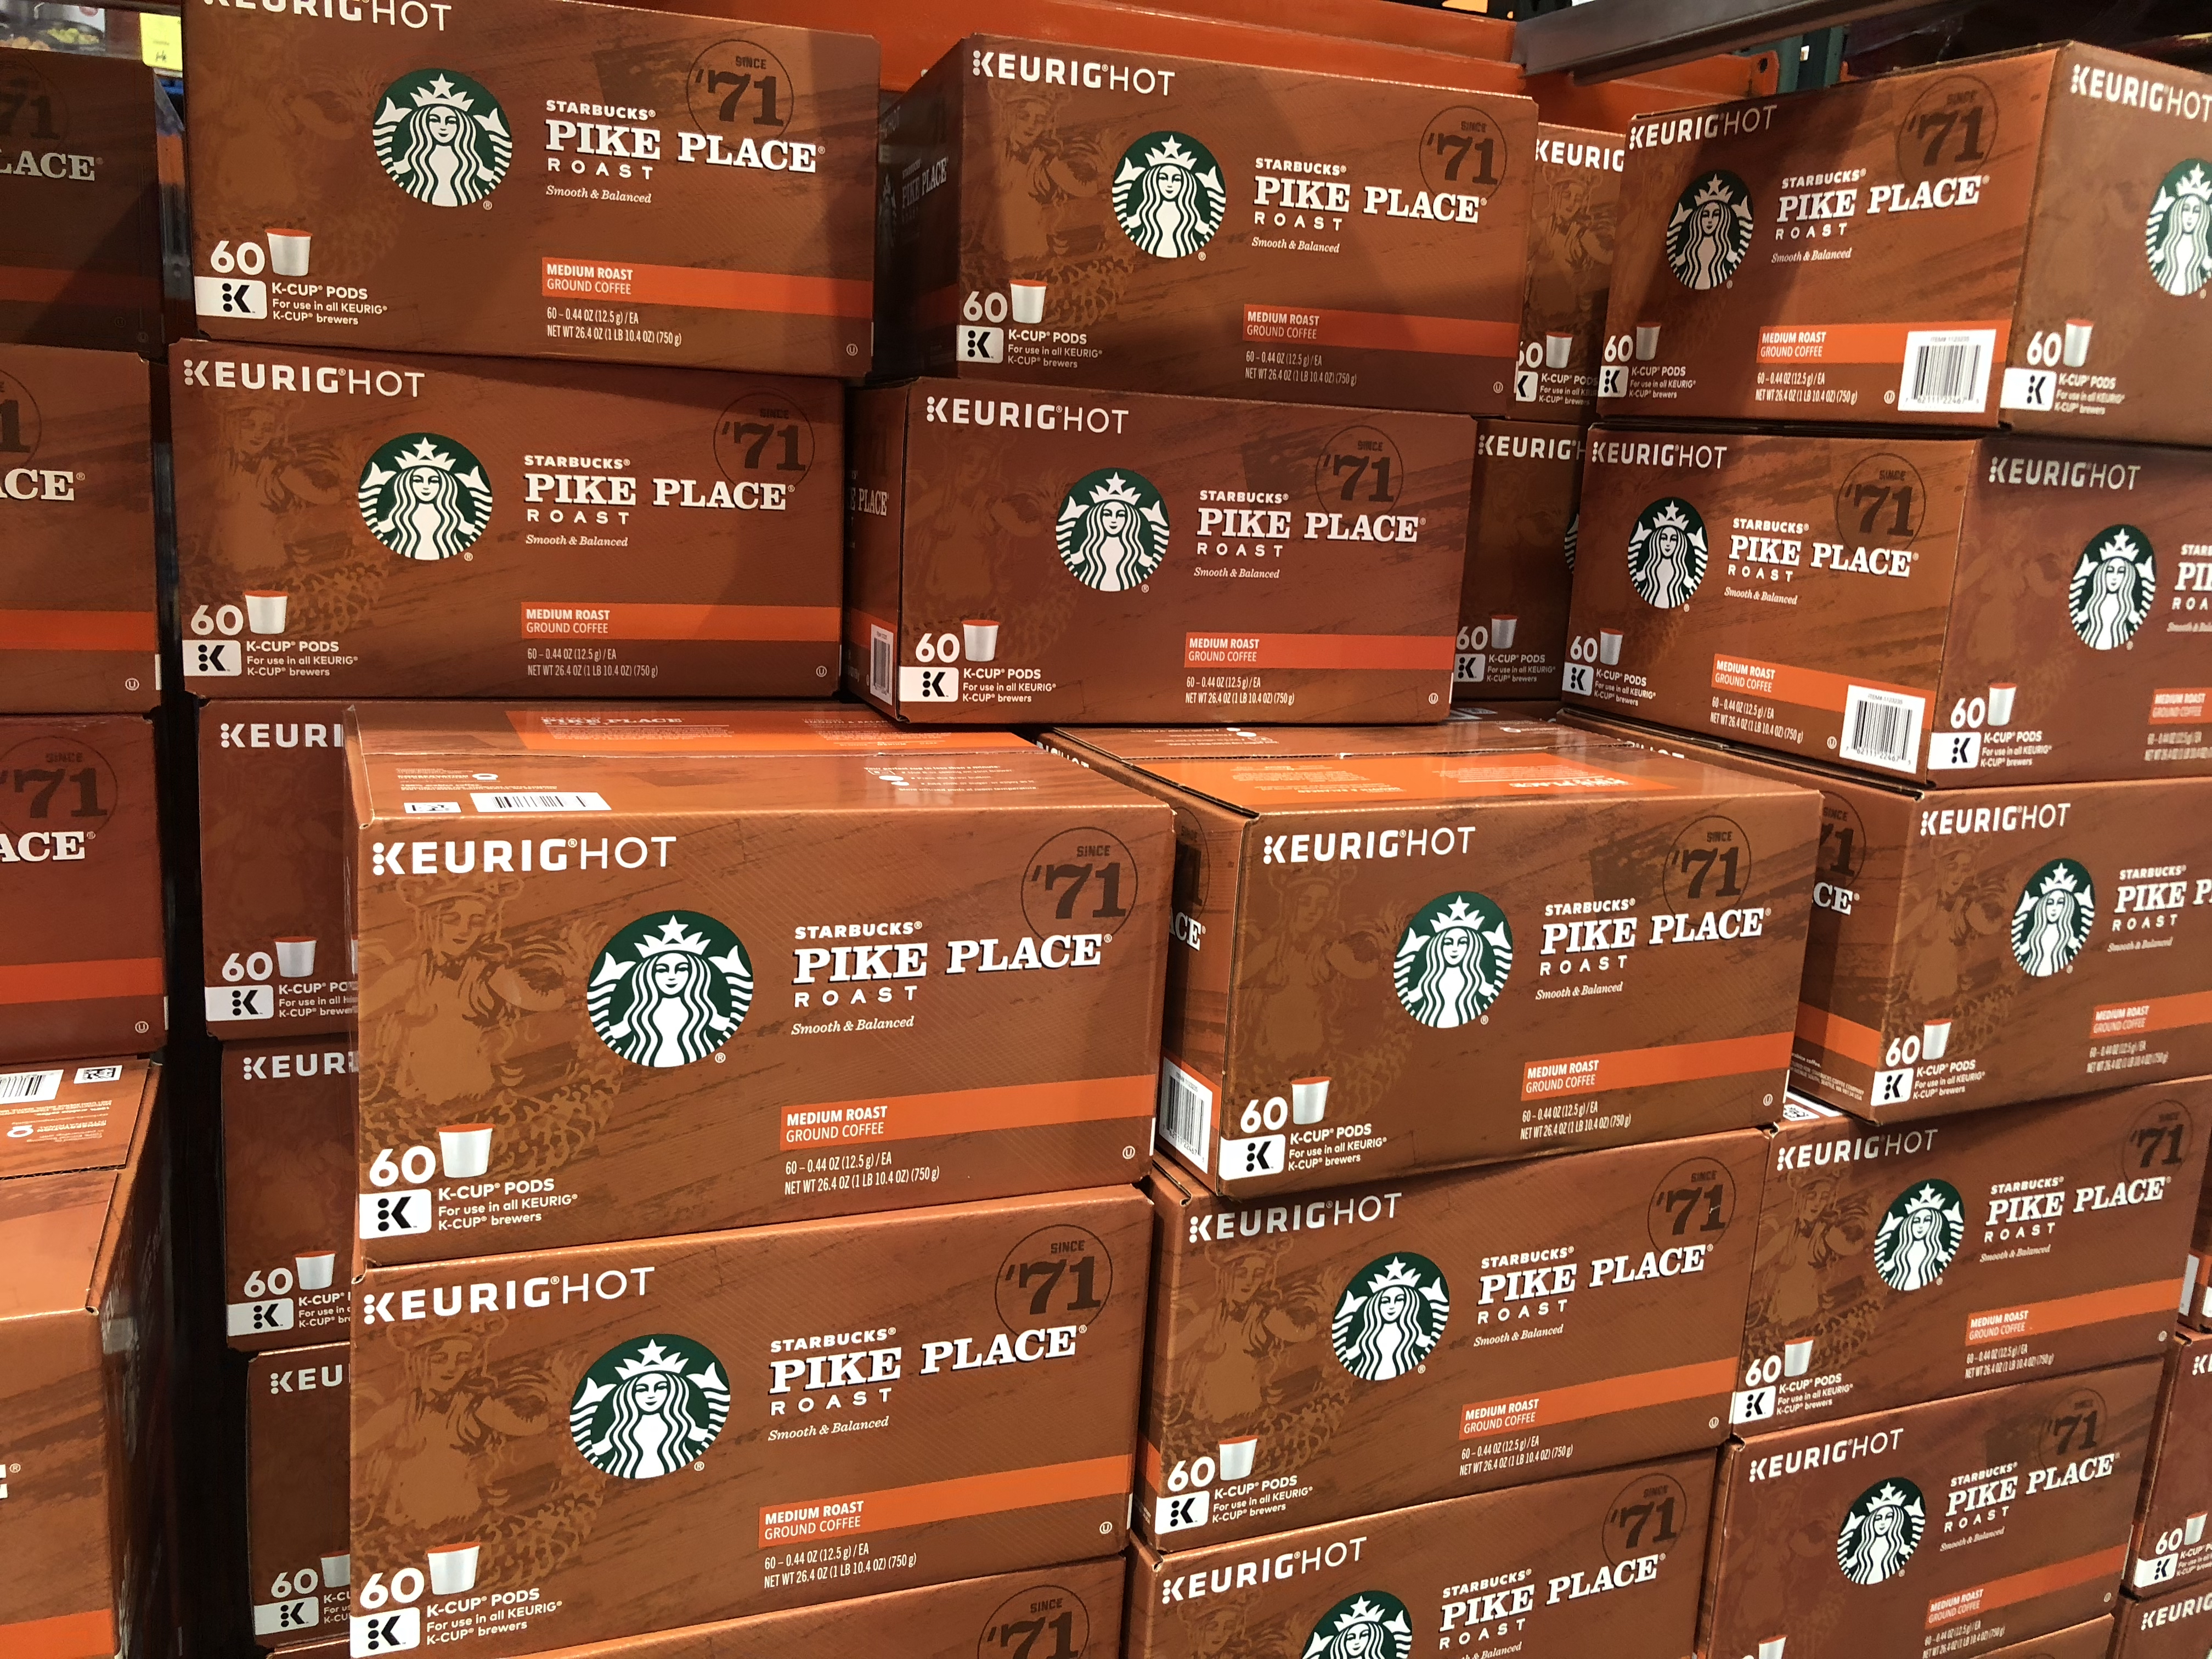 August keto Costco deals - Starbucks K-Cups at Costco 